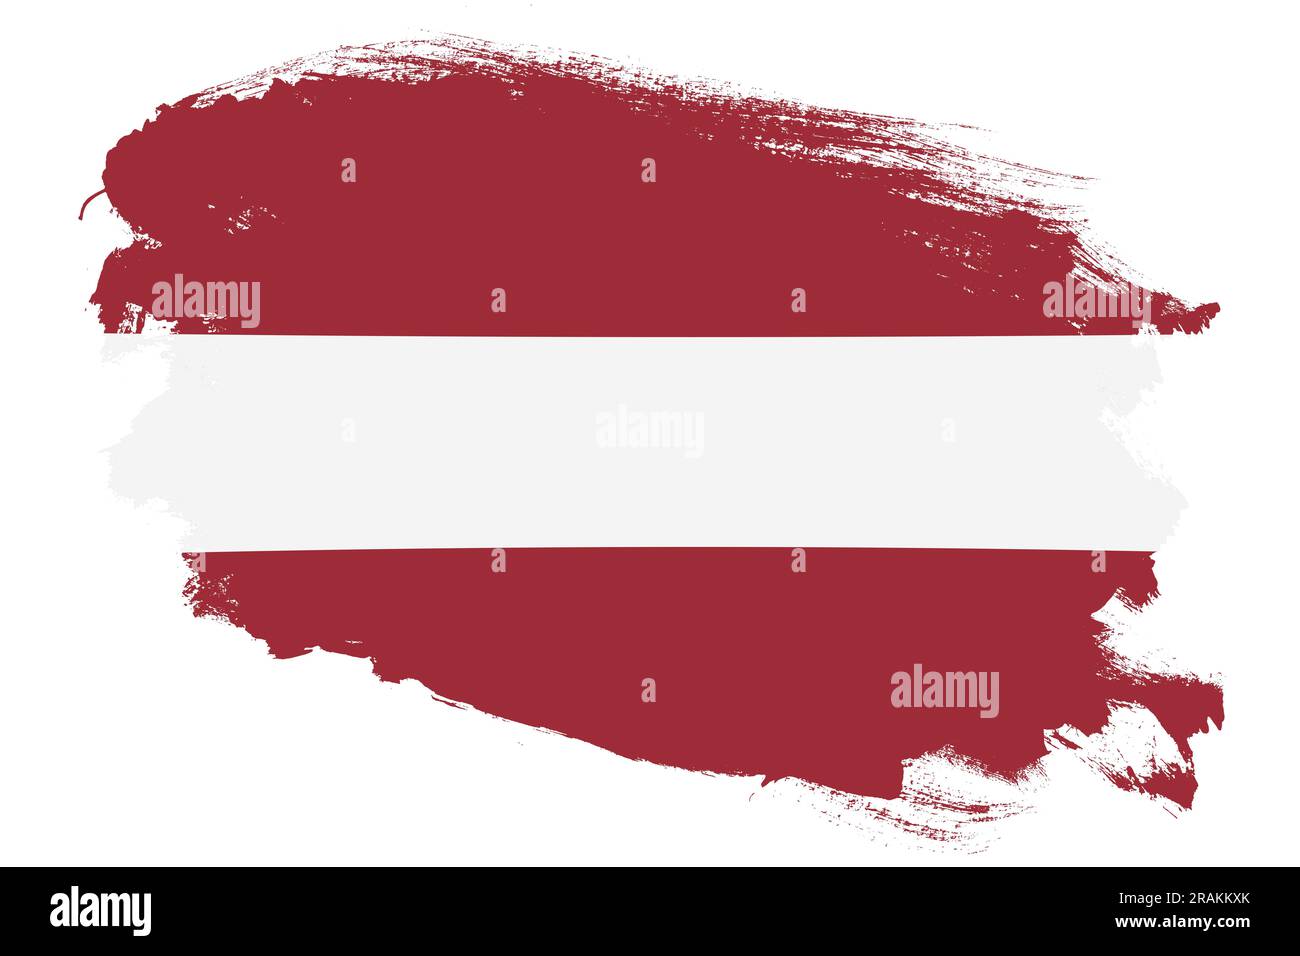 National flag of Latvia on grunge stroke brush textured white background Stock Photo